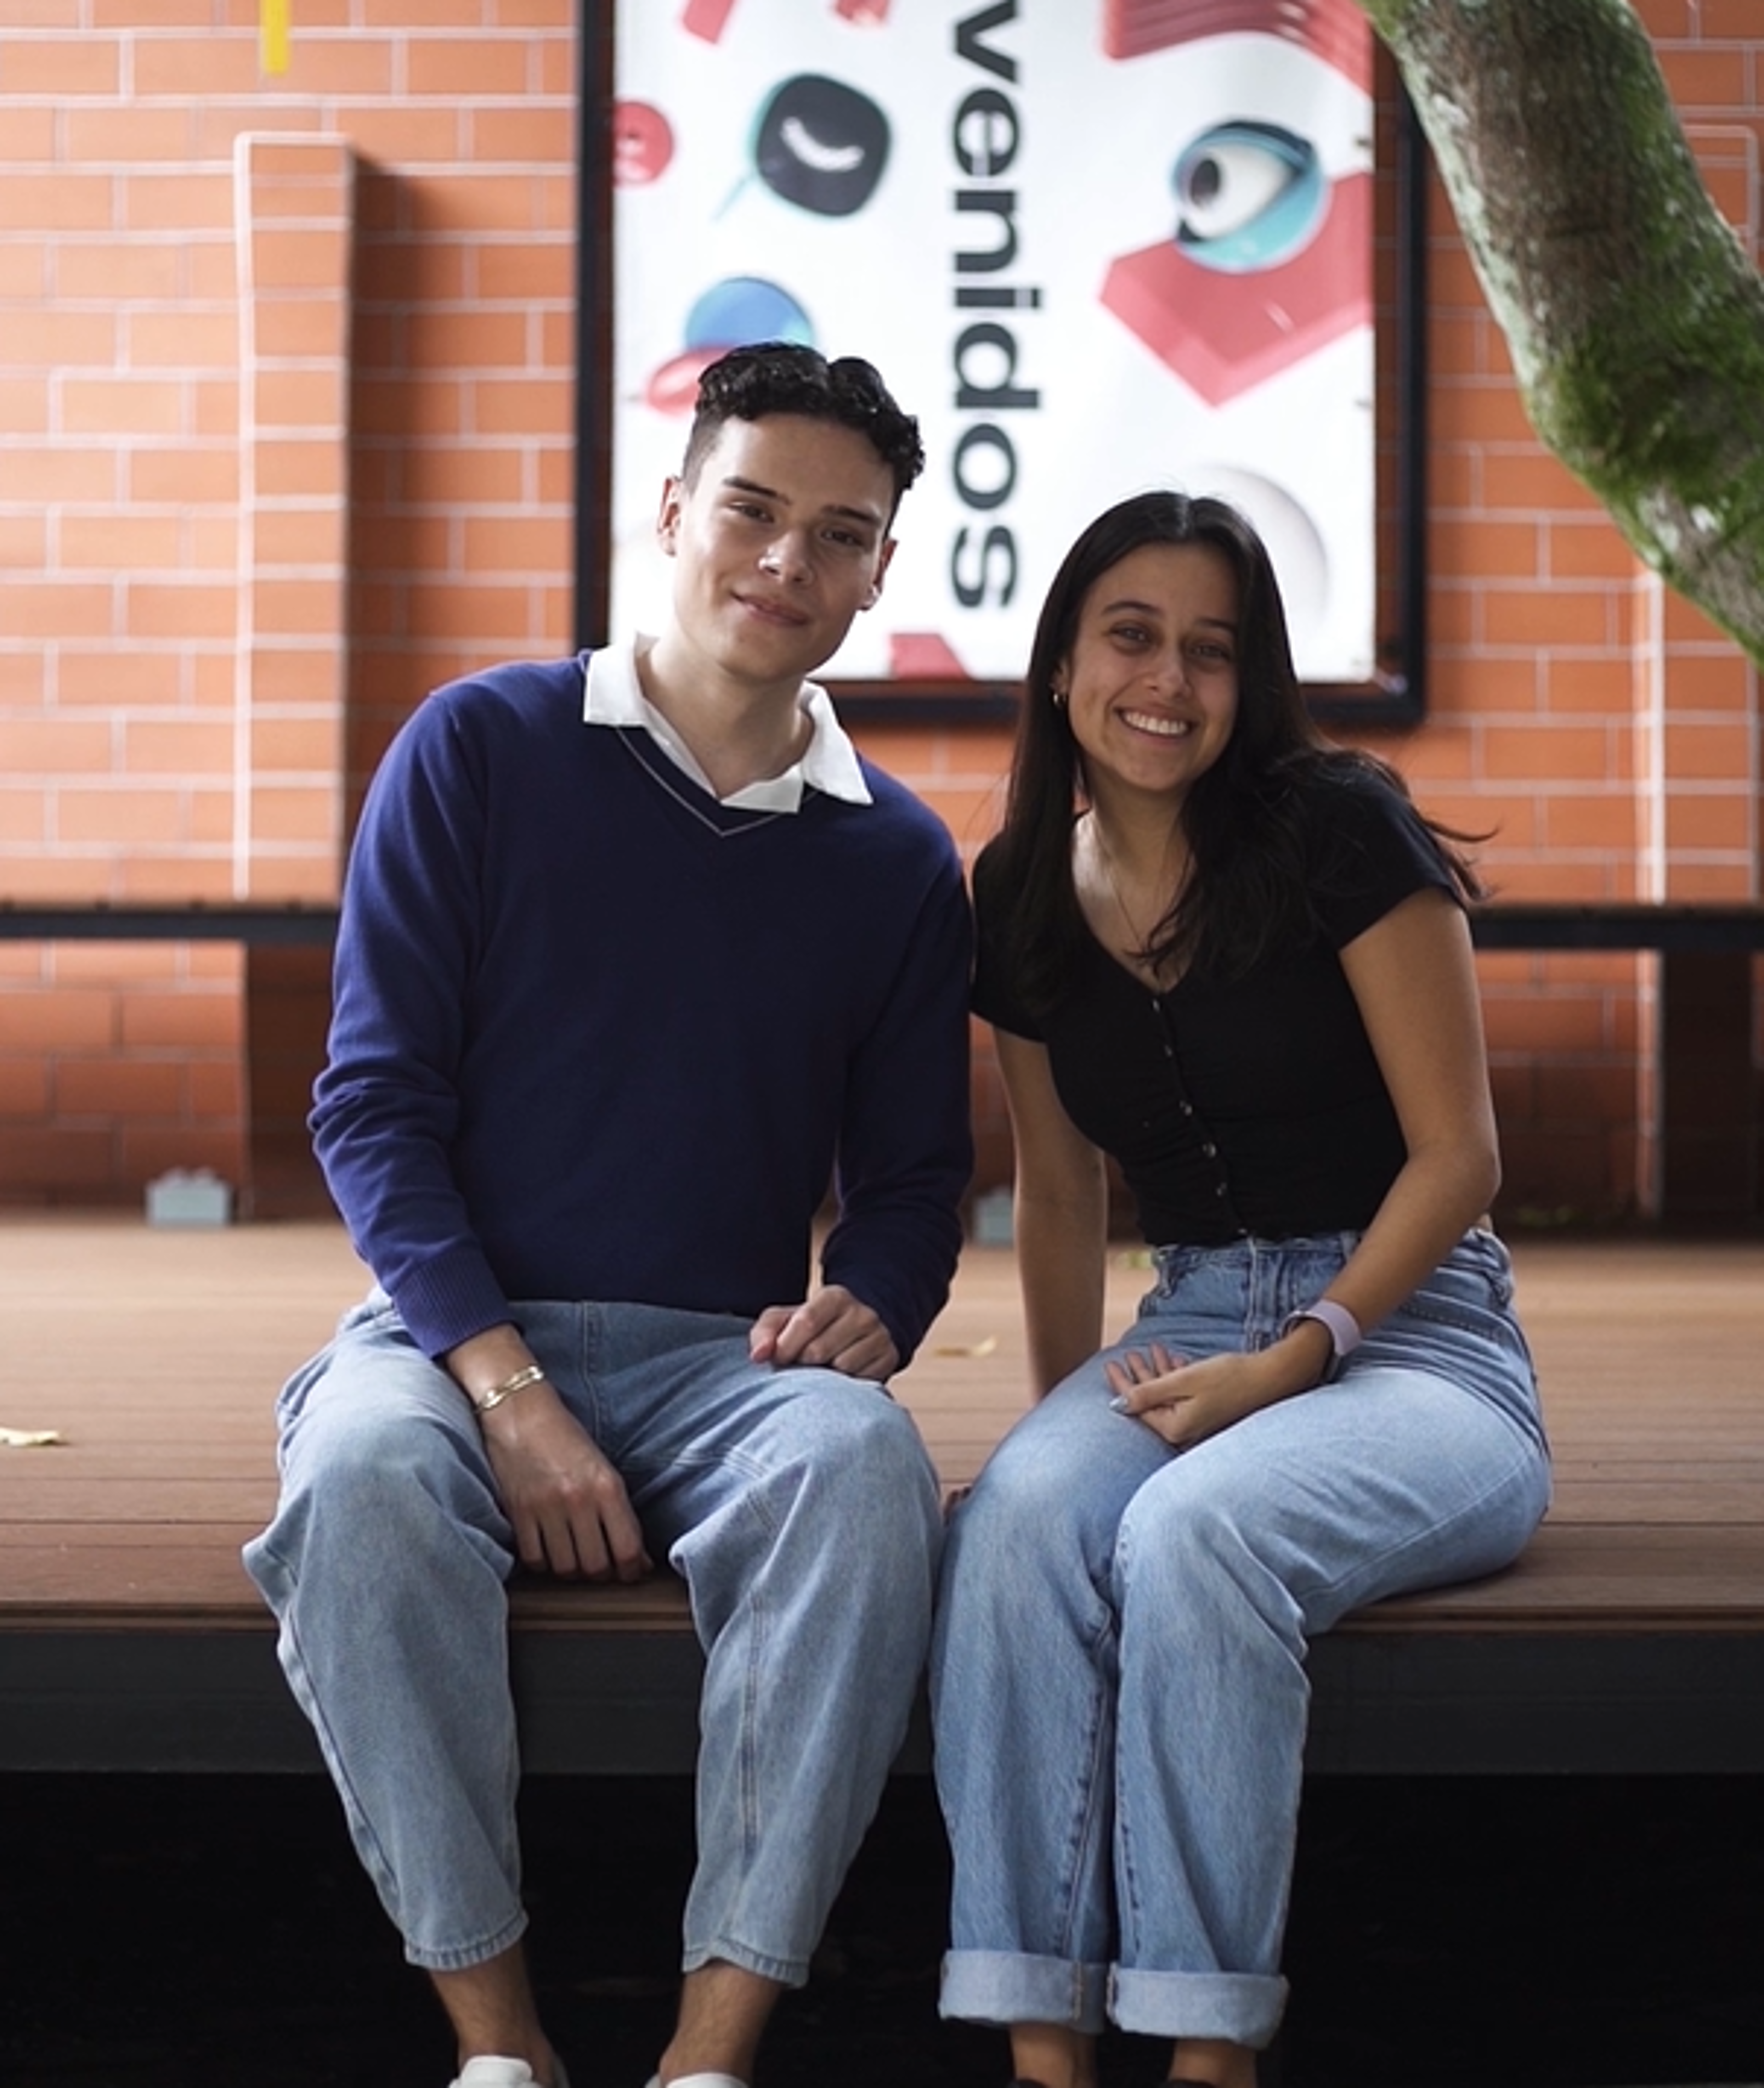 Un joven y una joven sentados sonrientes en una banca, con un cartel de bienvenida en español de fondo.